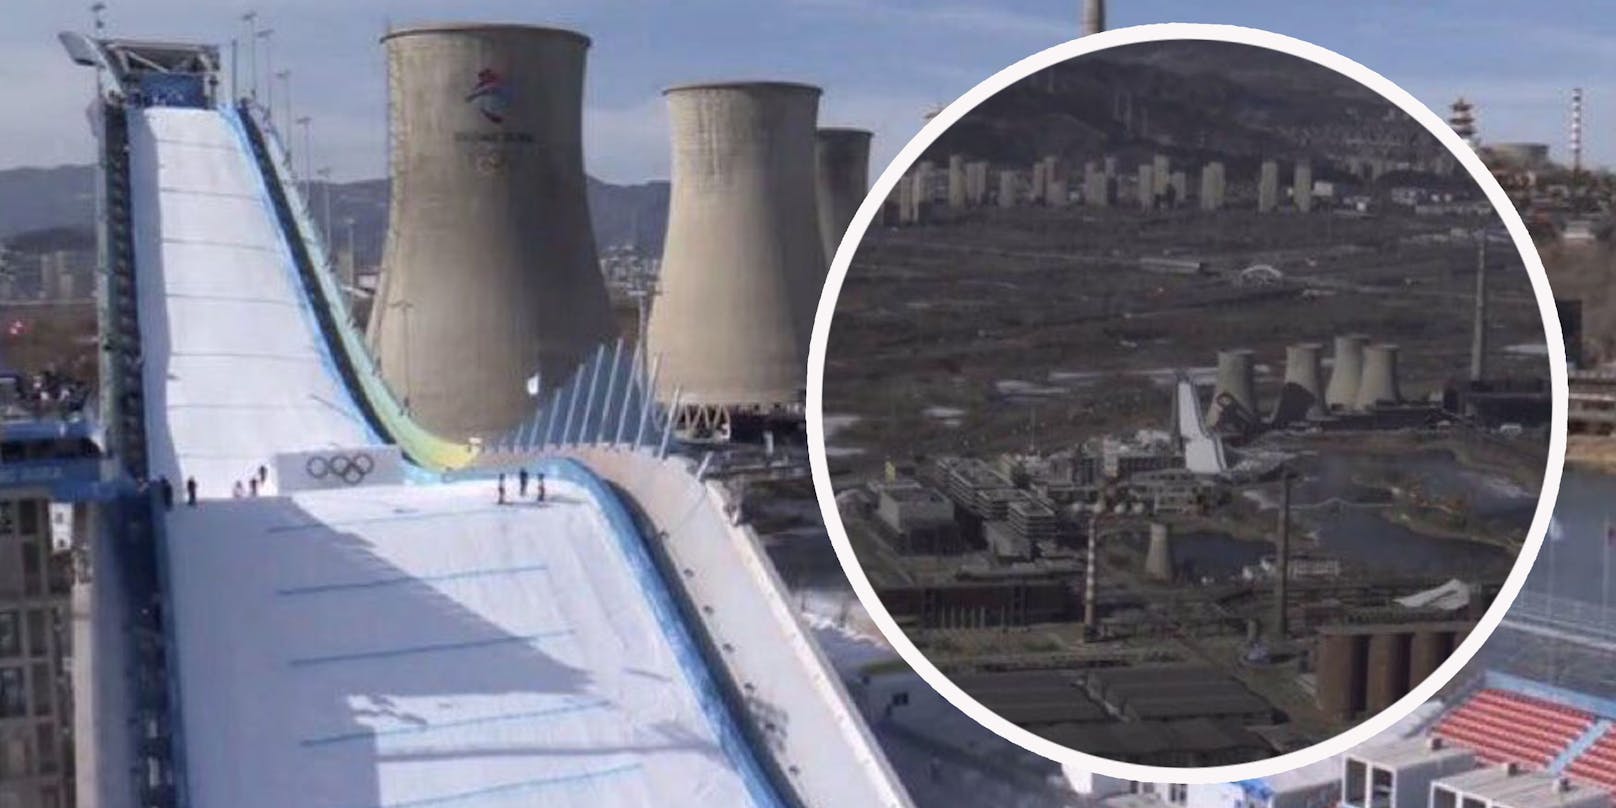 Eine Olympia-Schanze mitten im schneelosen Industriegebiet. Eine Winter-Idylle sieht anders aus. Die Olympischen Spiele von Peking sorgen für so manches kurioses Bild.